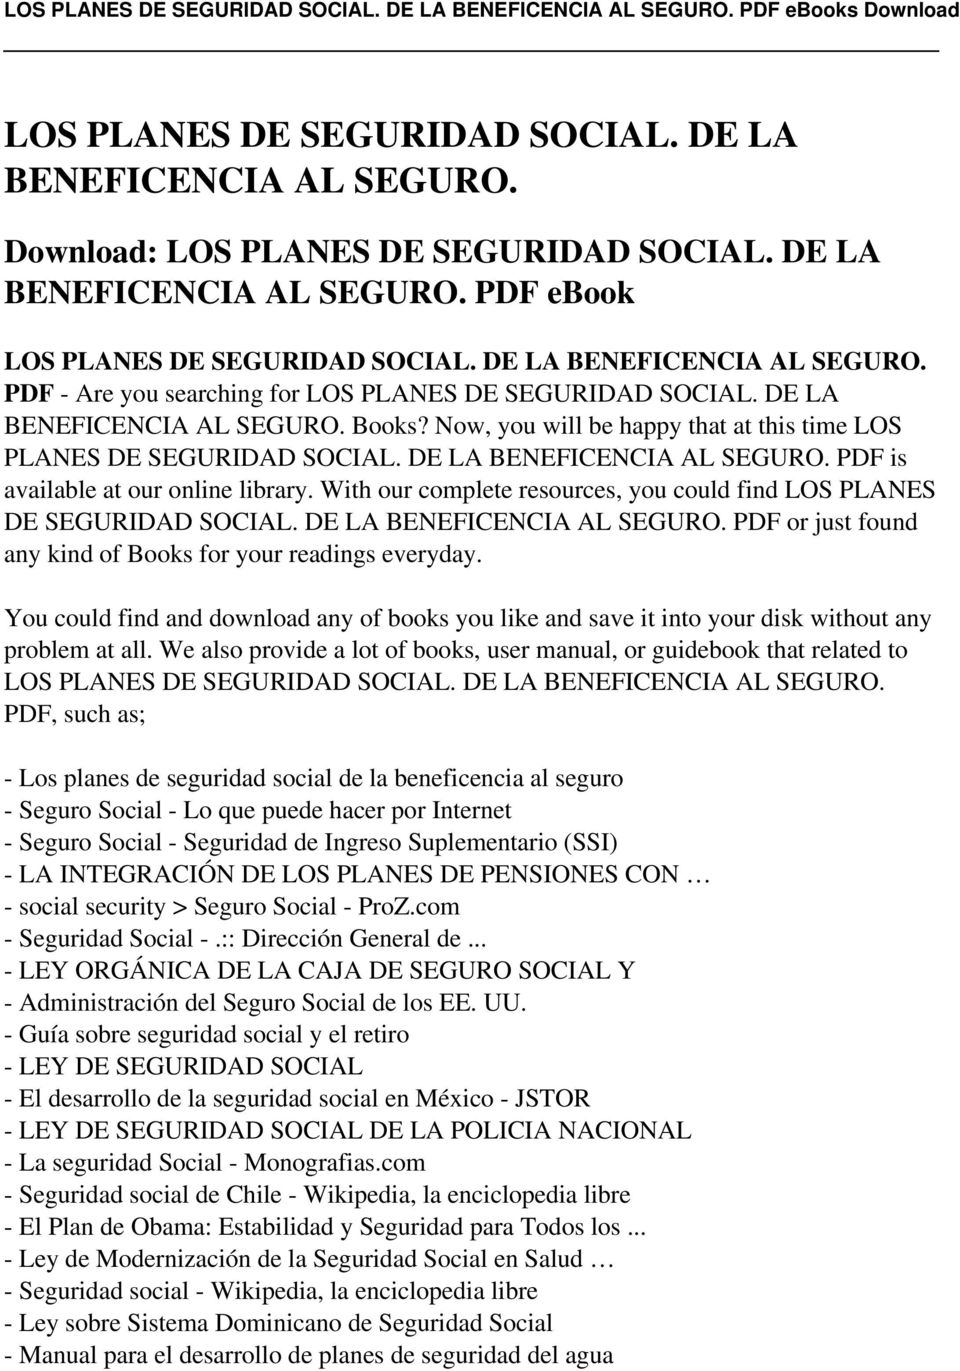 DE LA BENEFICENCIA AL SEGURO. PDF is available at our online library. With our complete resources, you could find LOS PLANES DE SEGURIDAD SOCIAL. DE LA BENEFICENCIA AL SEGURO.